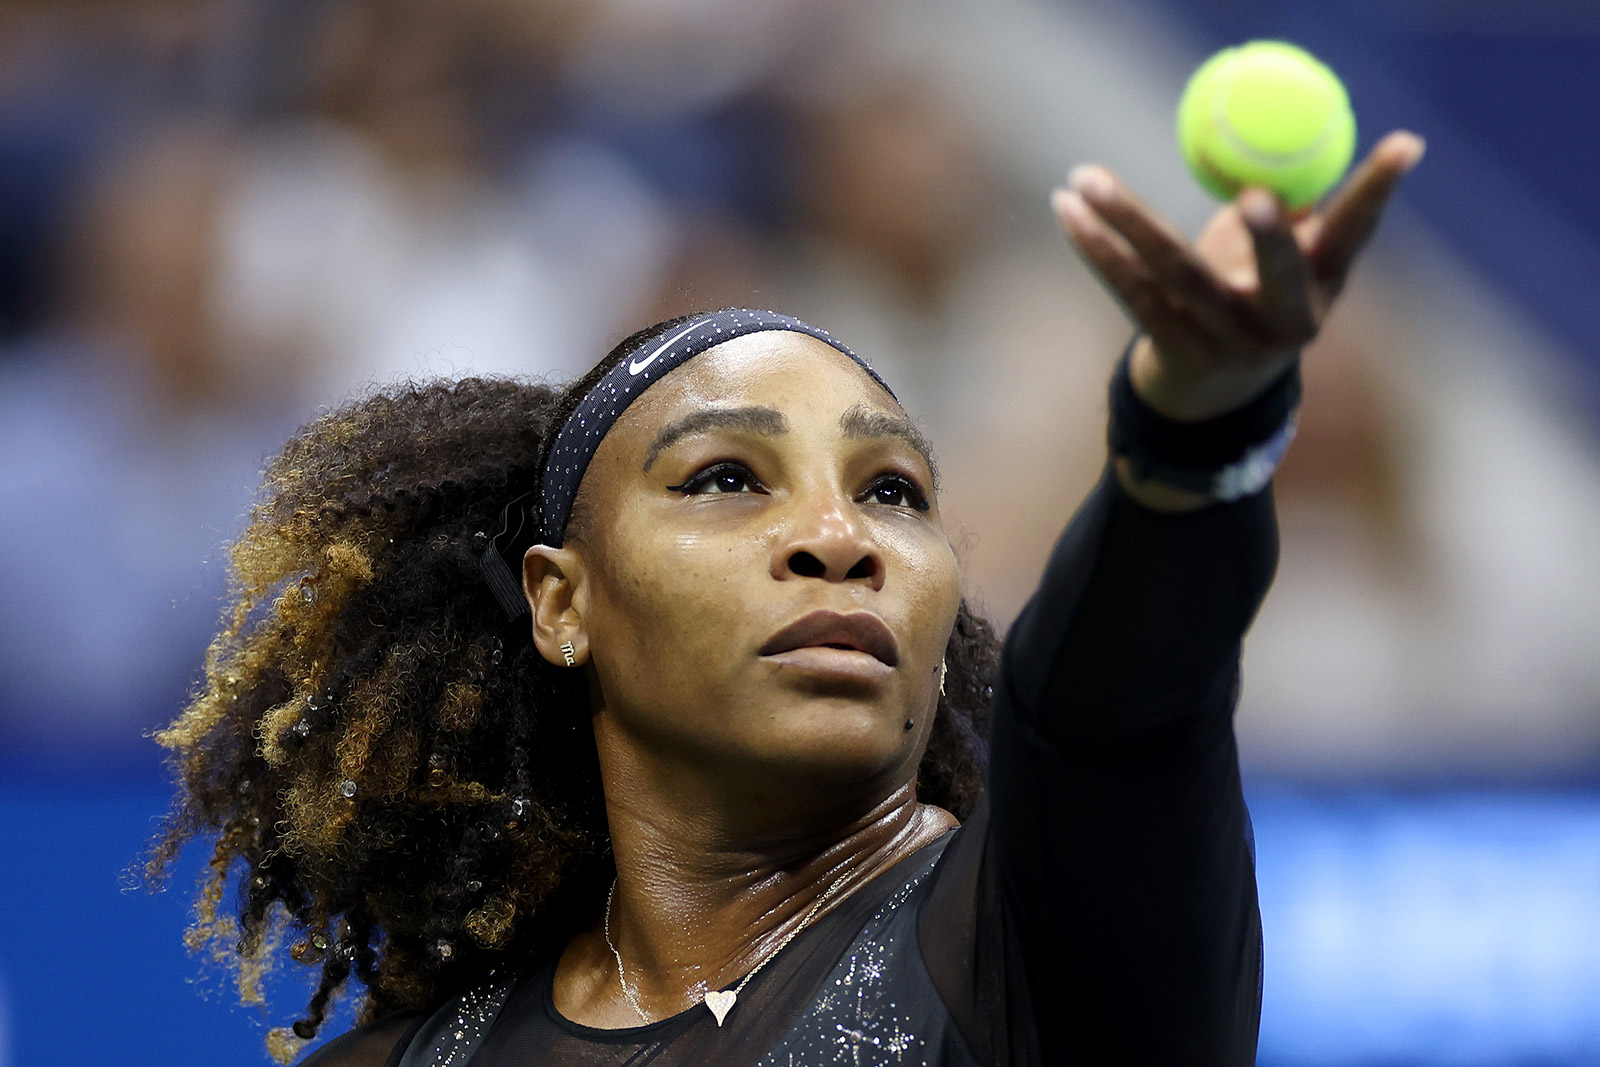 Serena Williams serves against Ajla Tomljanović on Friday.